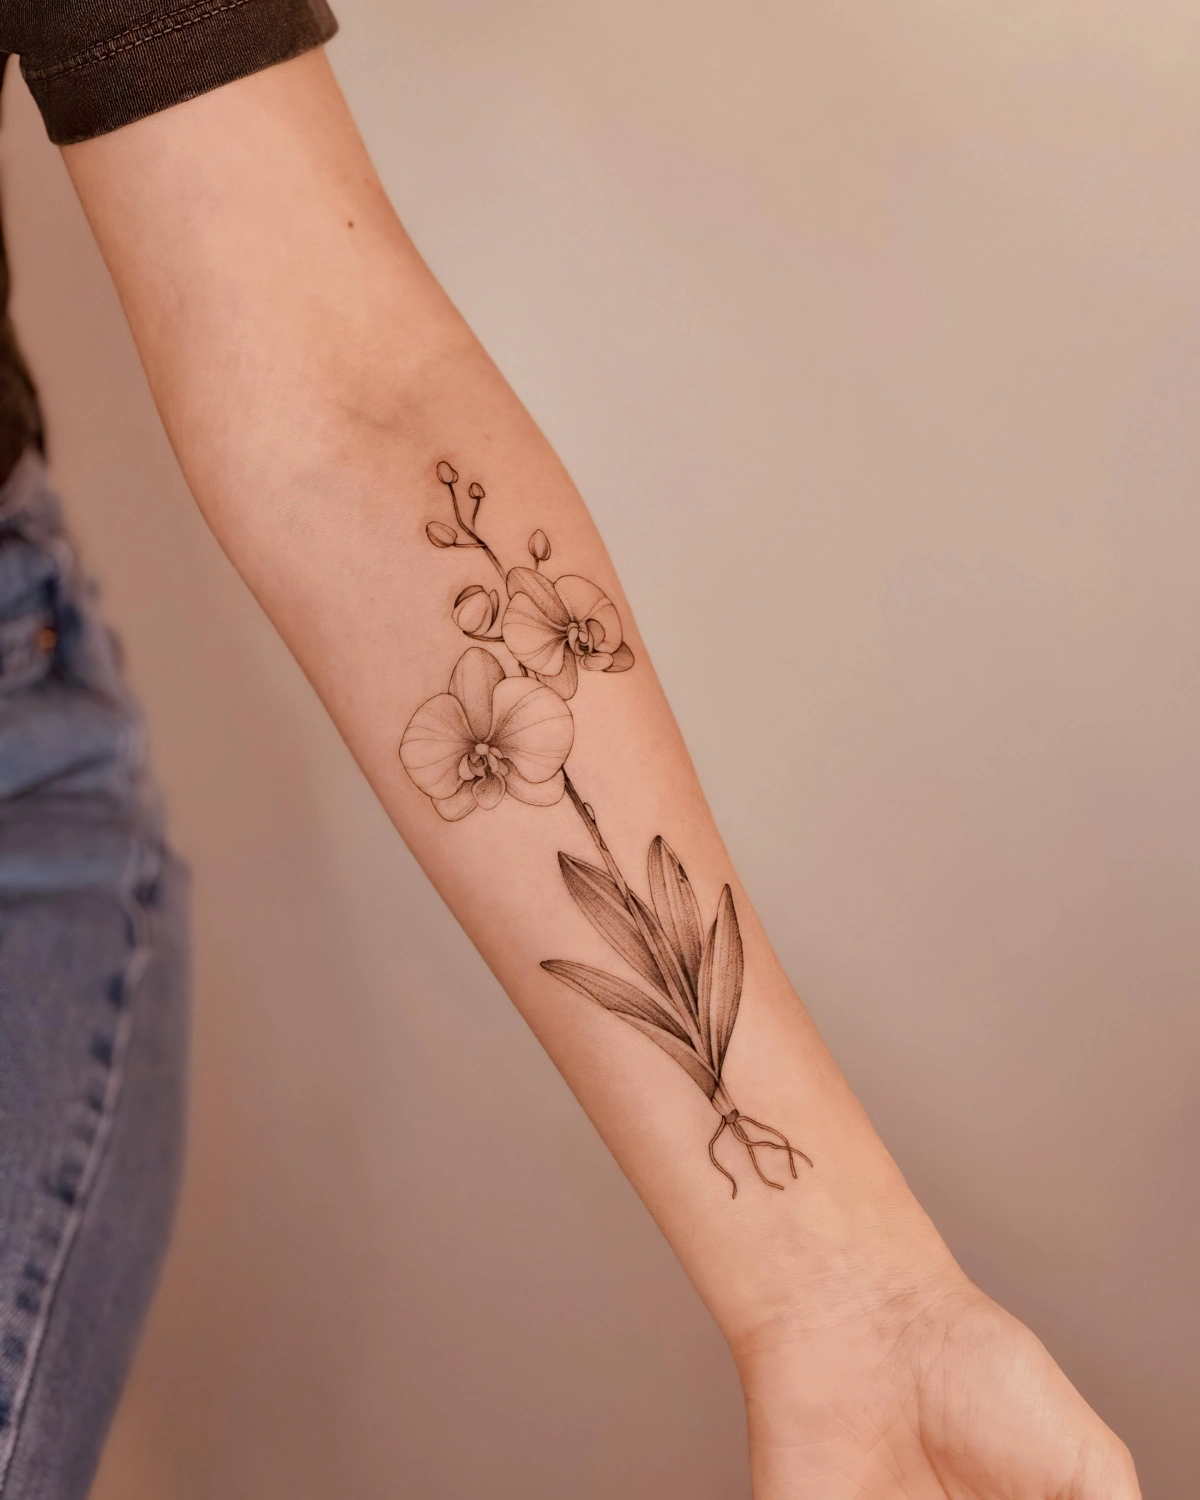 tatouage fleur bras femme feuilles jeans t shirt manche noire